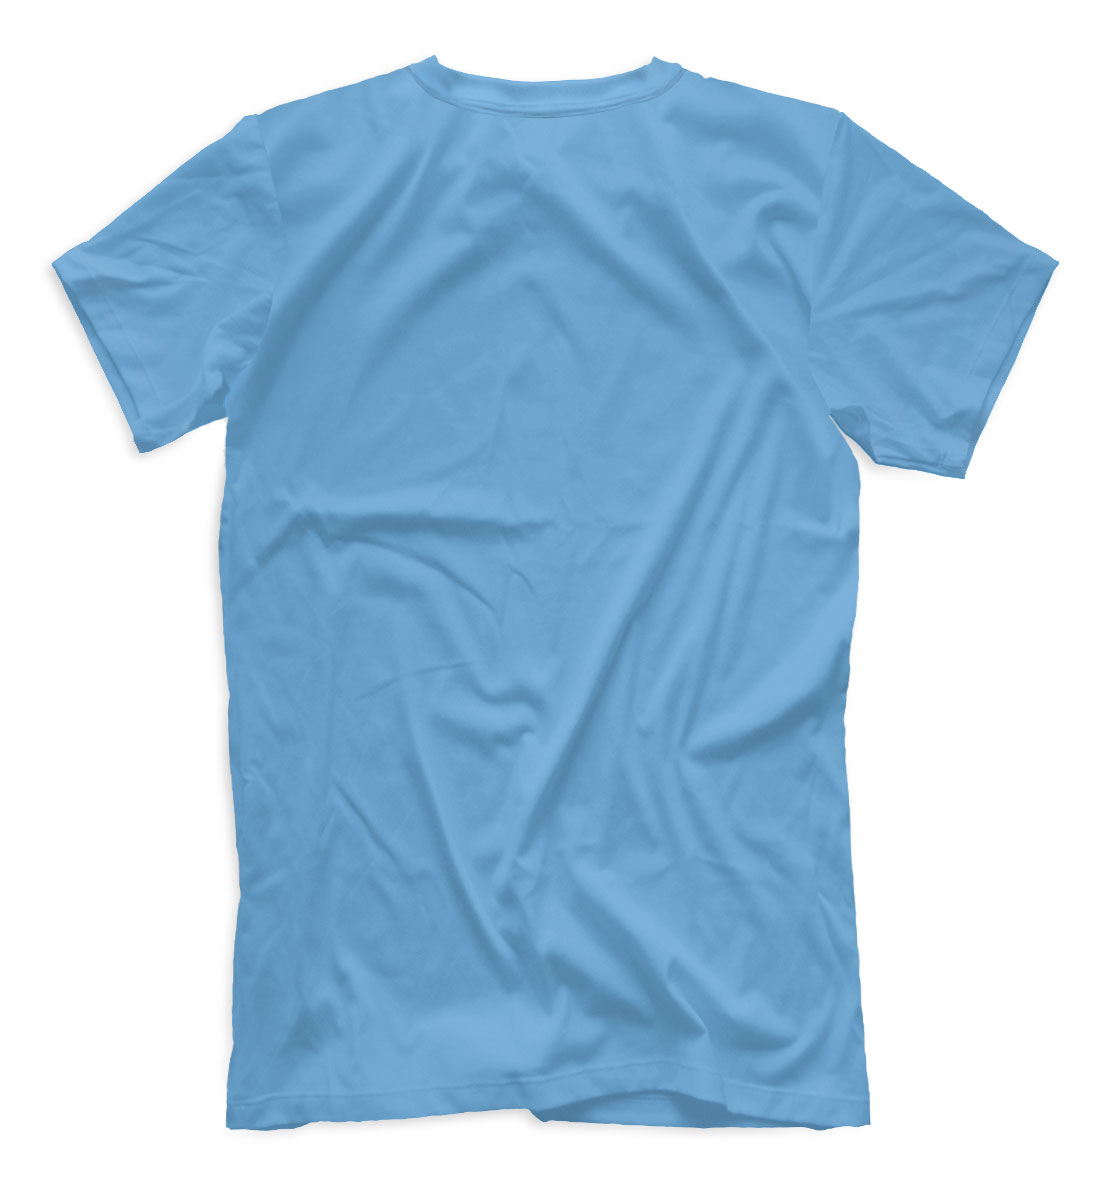 Женская футболка с принтом My Singing Monsters Composer голубой фон  - фото 2-спина